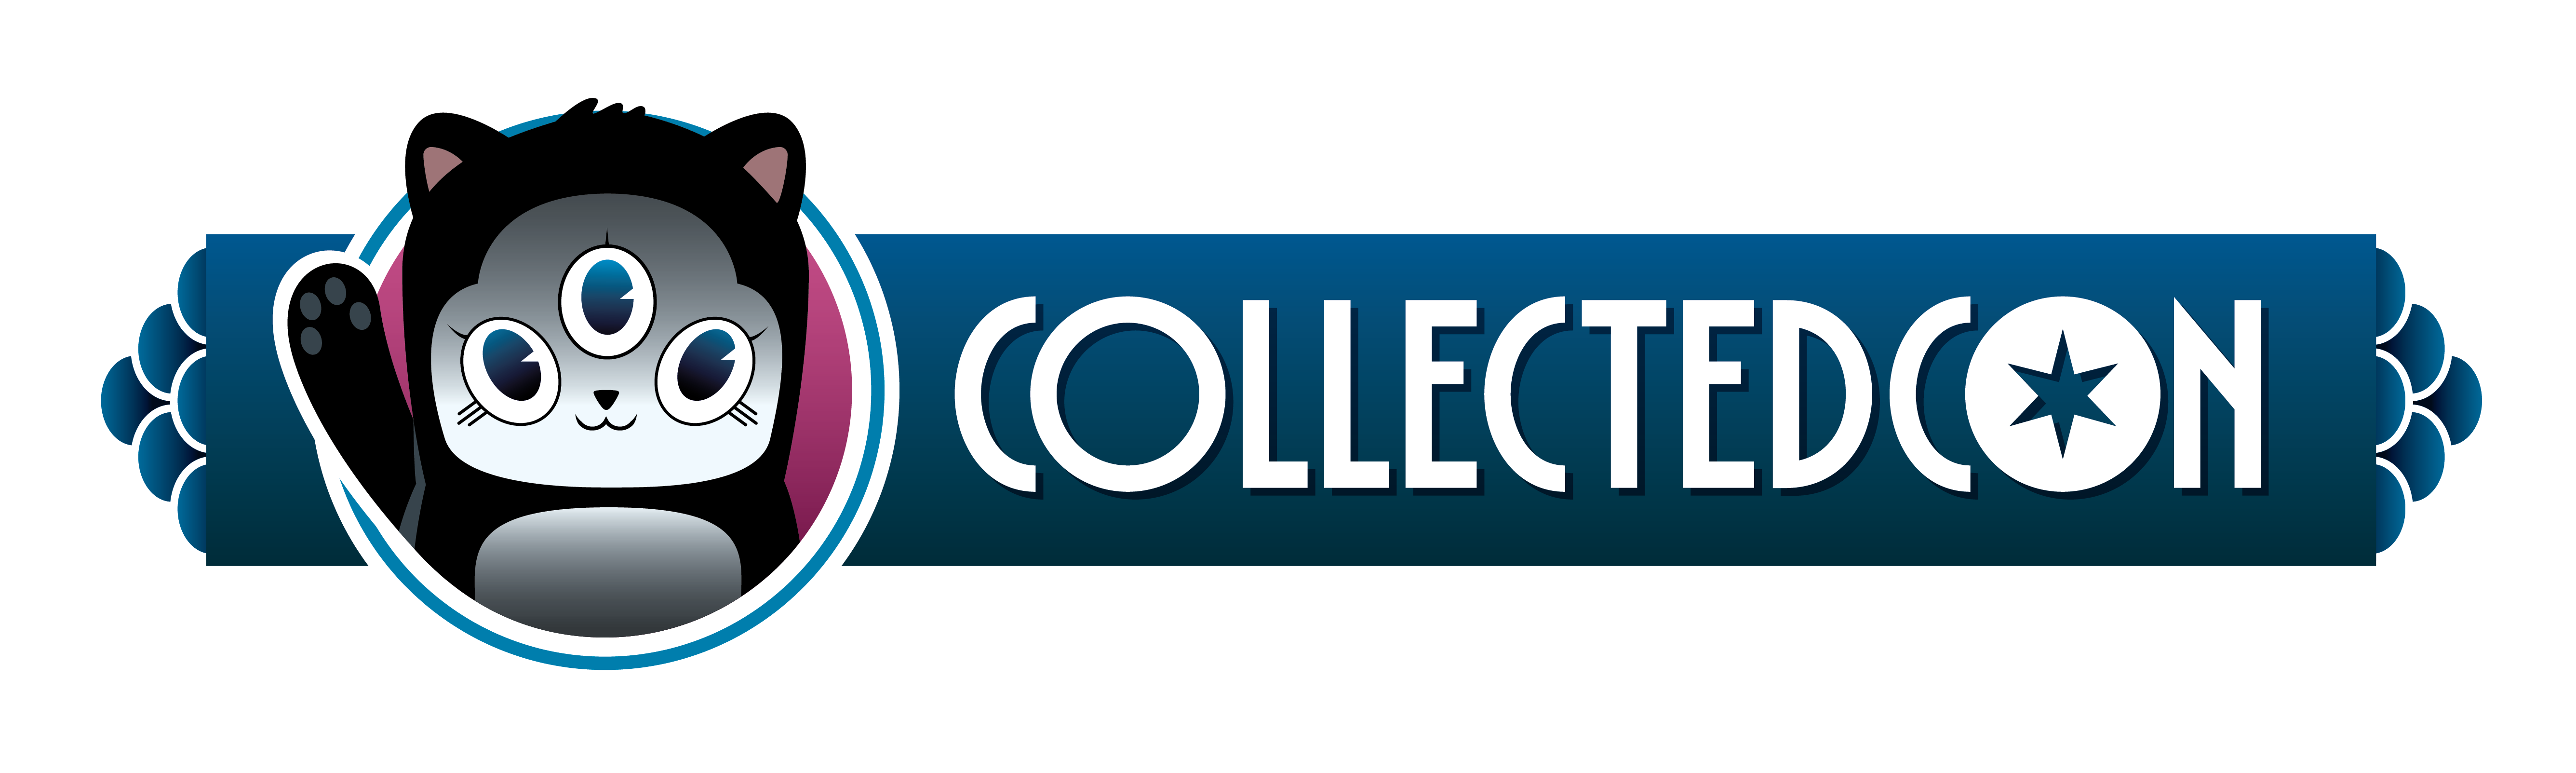 CollectedCon logo